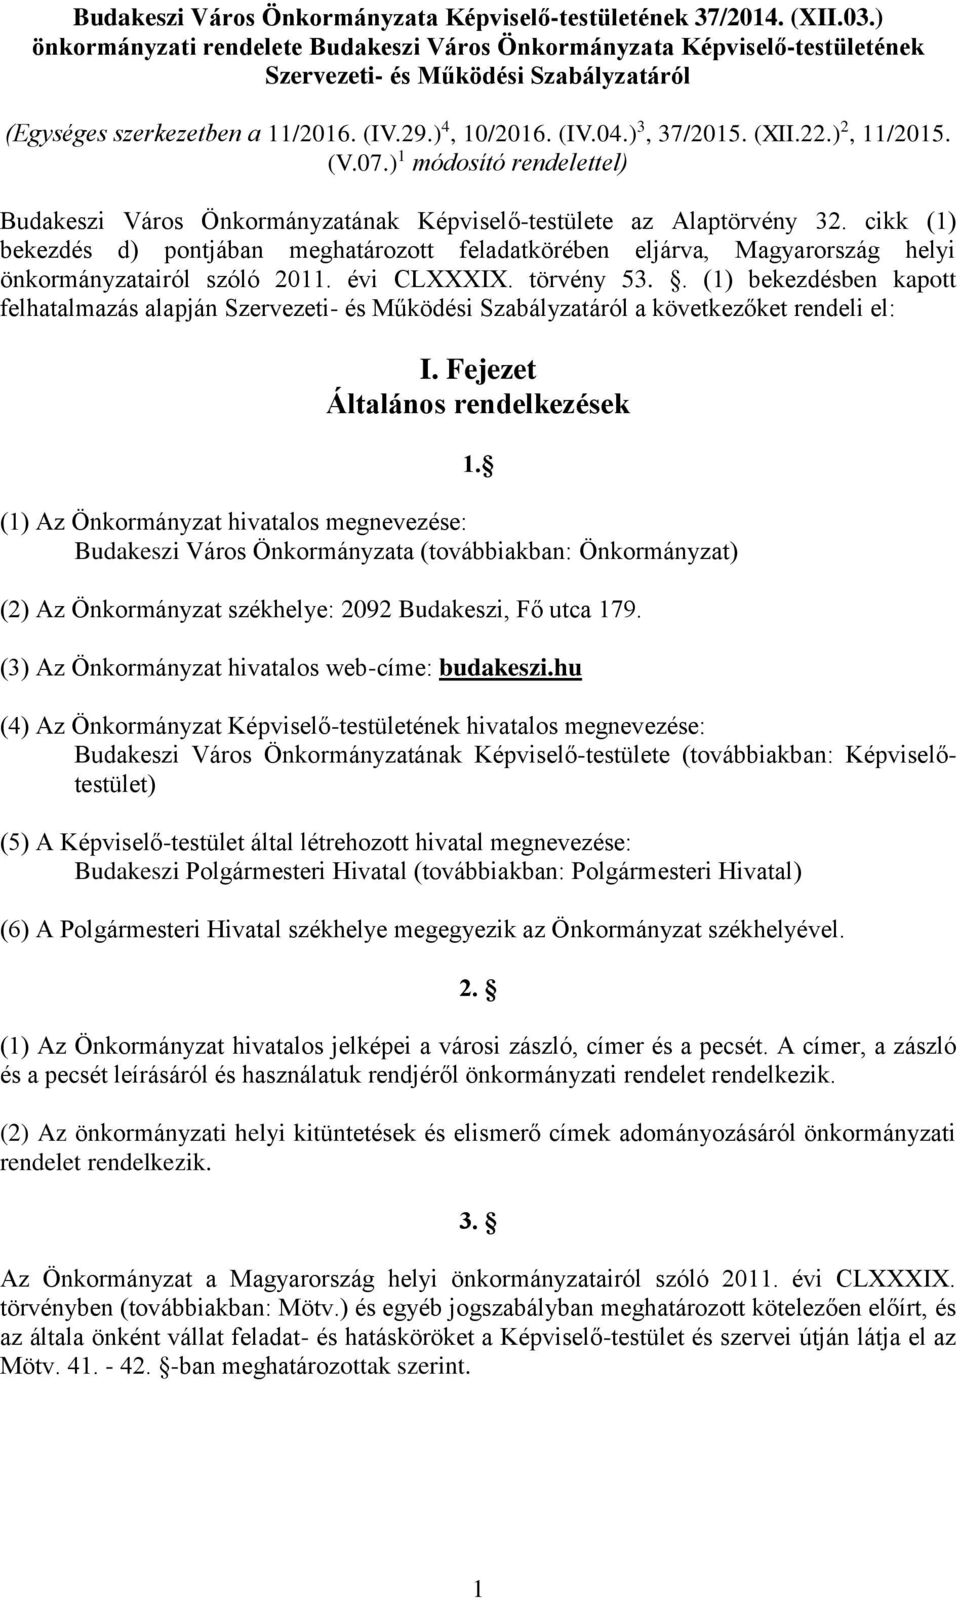 22.) 2, 11/2015. (V.07.) 1 módosító rendelettel) Budakeszi Város Önkormányzatának Képviselő-testülete az Alaptörvény 32.